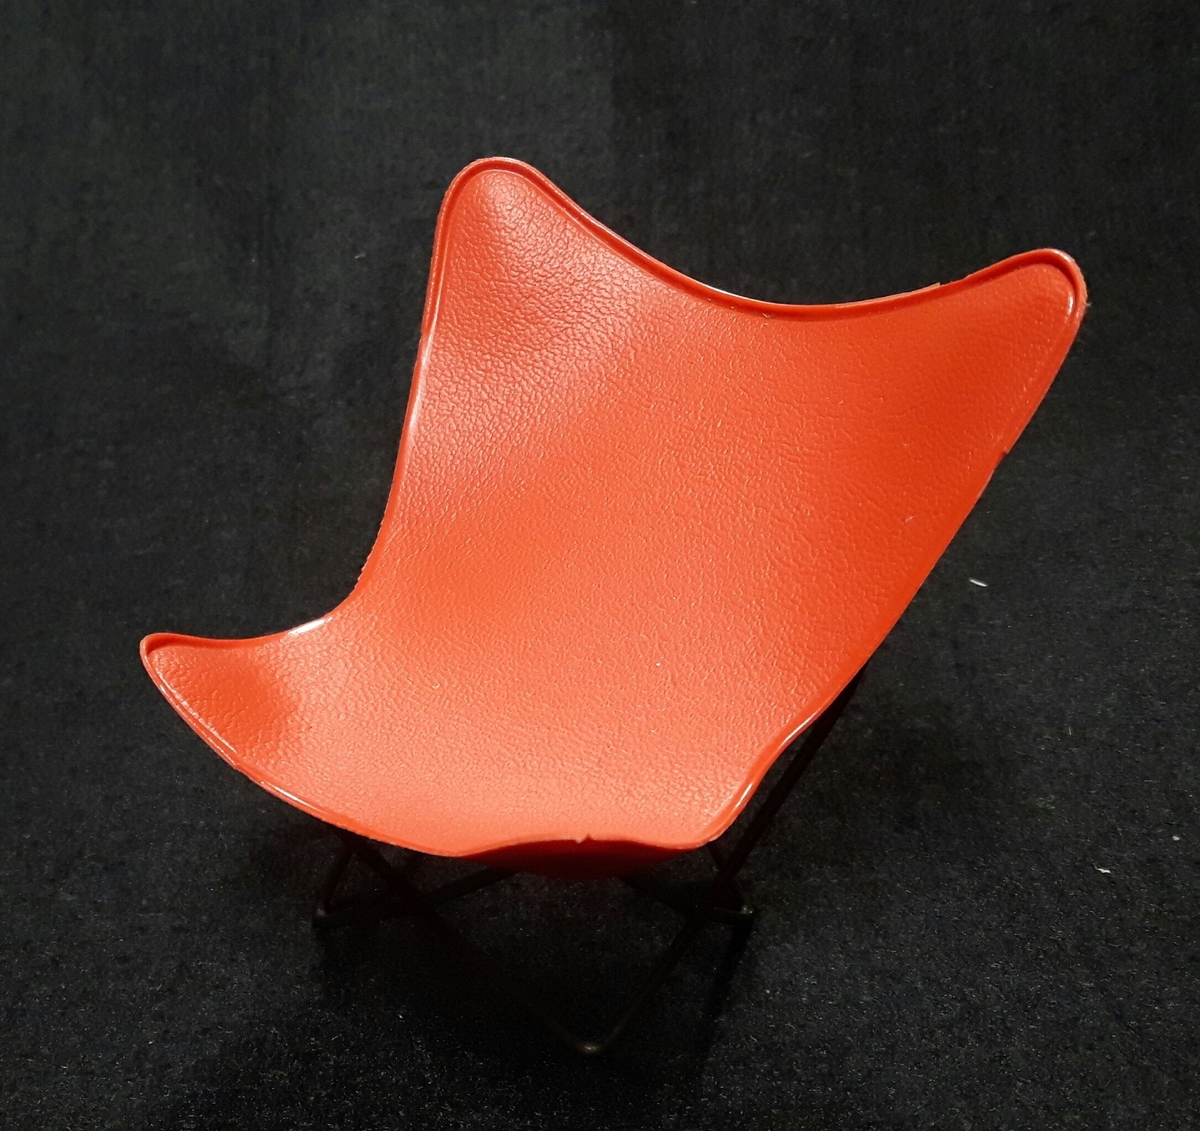 Stol, så kallad fladdermusstol i rött.

Ingår i en samling möbelmodeller använd vid kurser i heminredning anordnade av Älvsborgs läns norra slöjdförening.